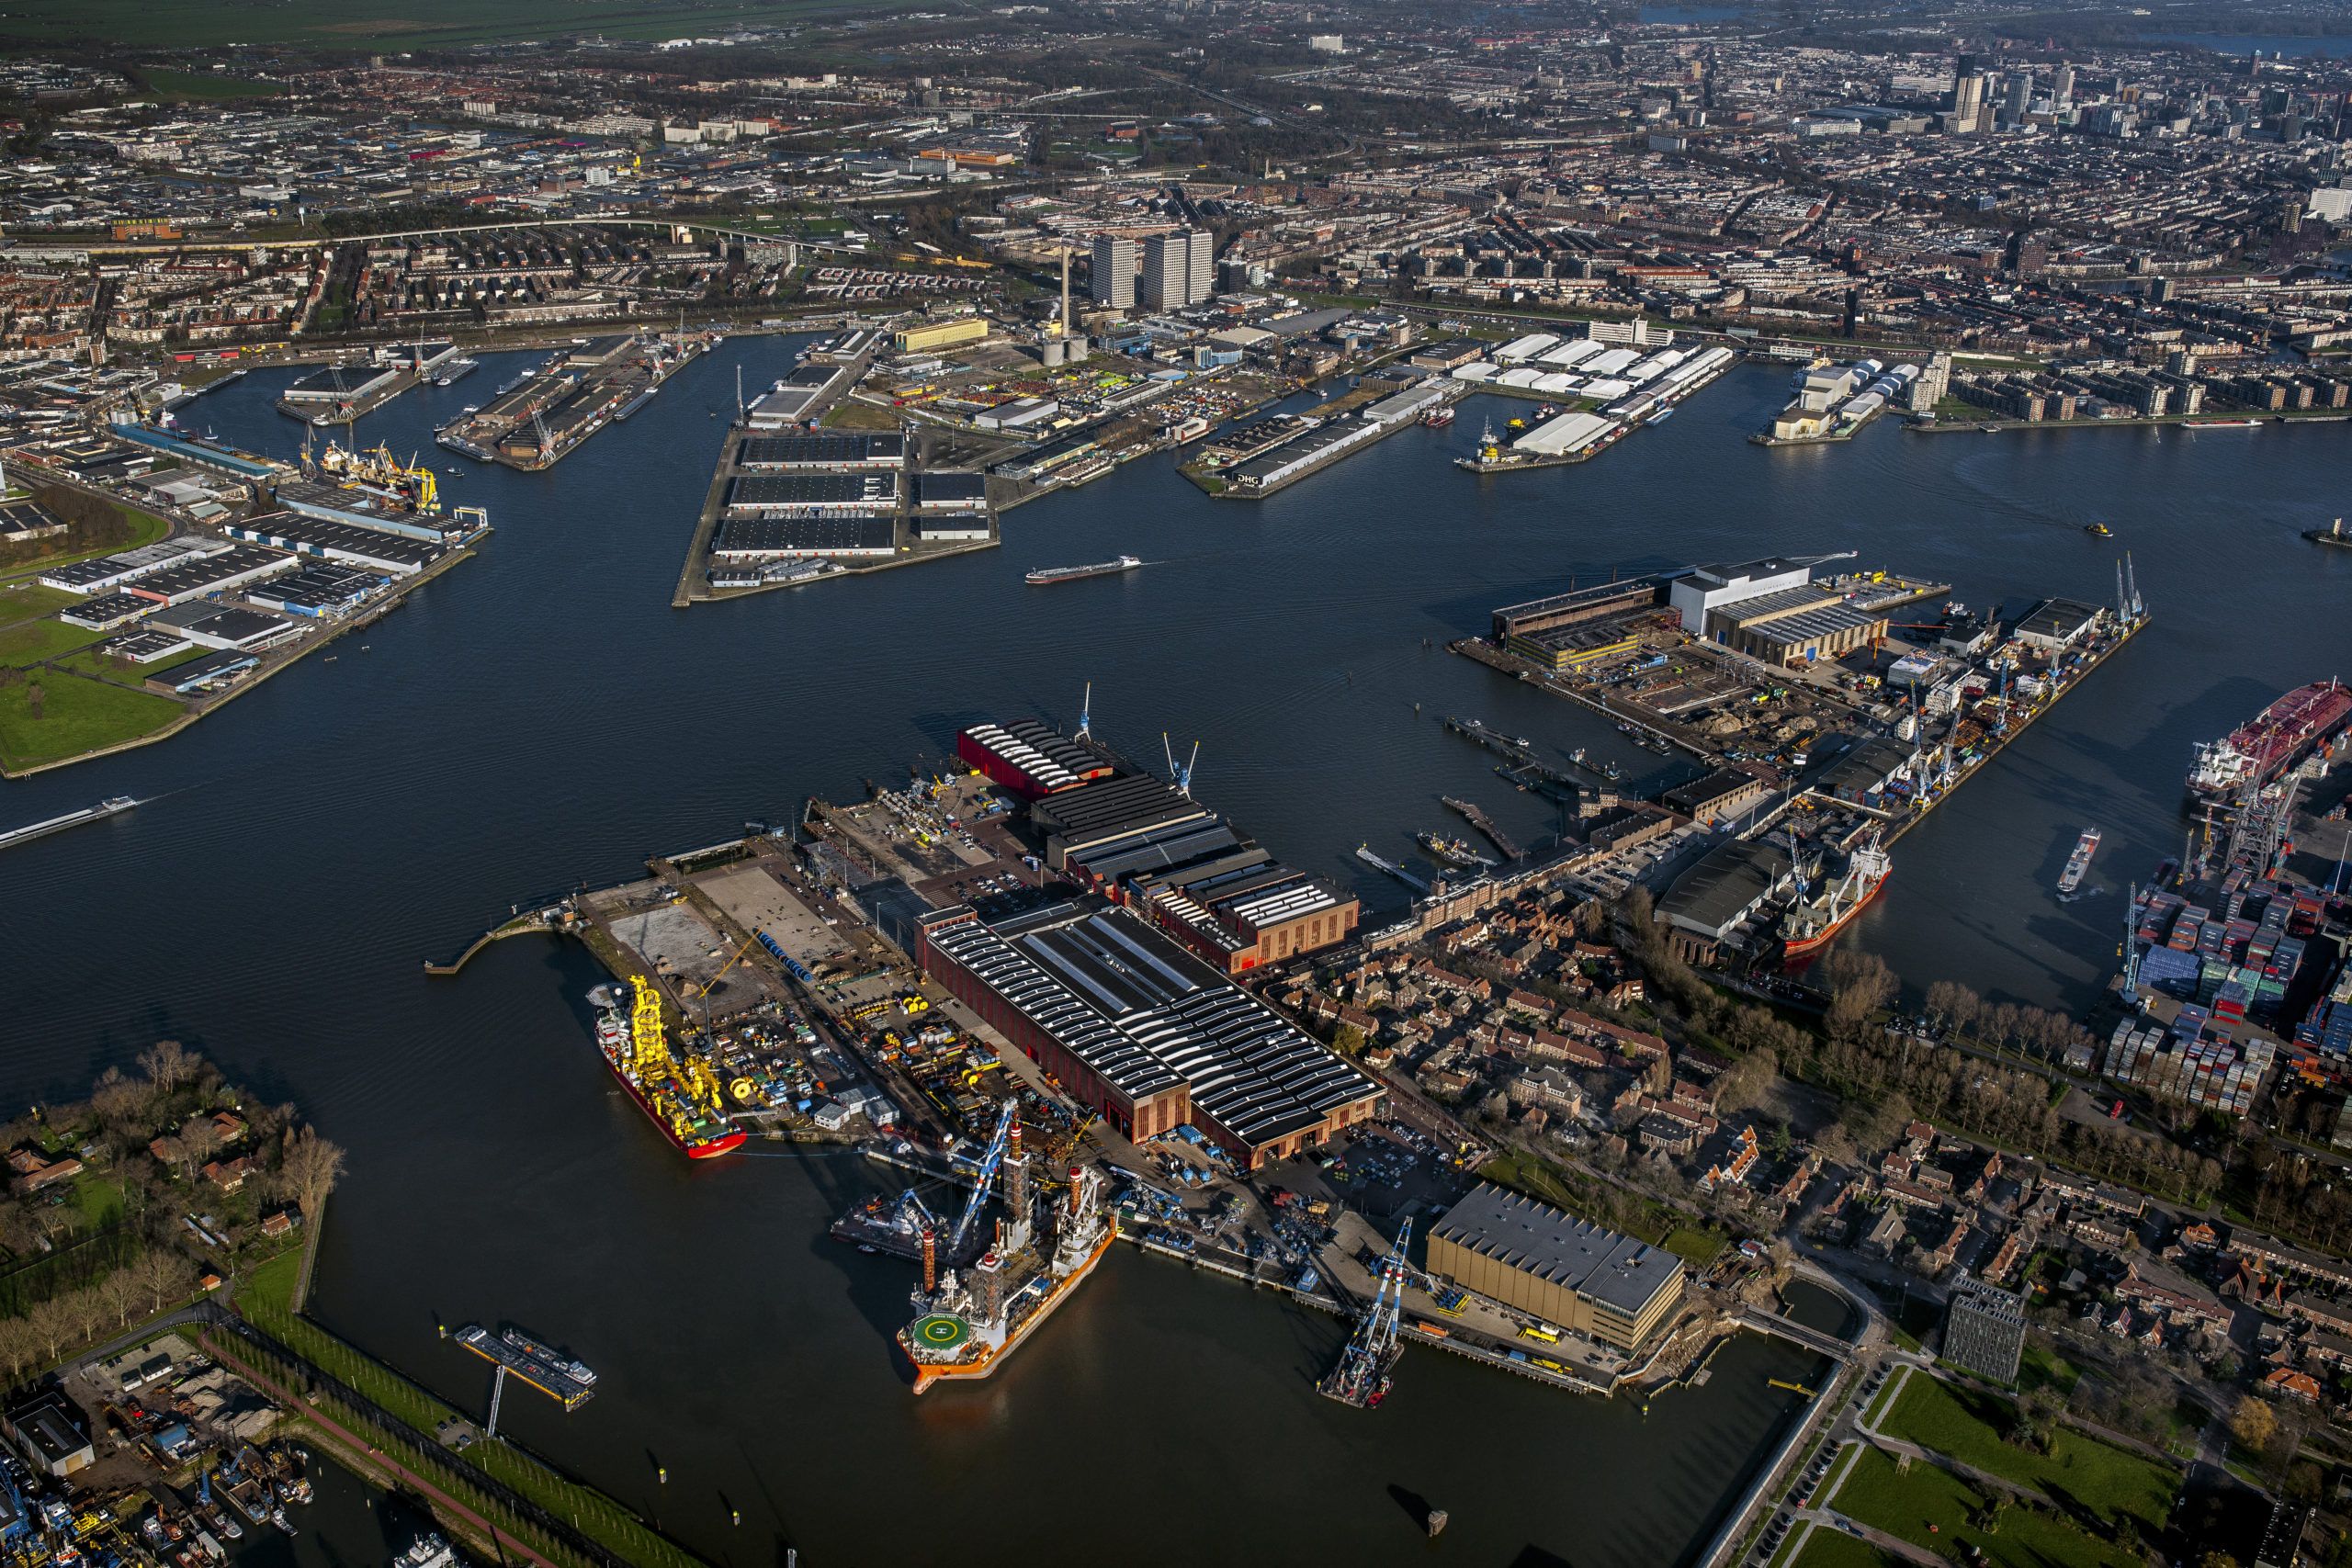 The Makers es un nuevo distrito de la ciudad de Rotterdam que apuesta por el emprendimiento y la innovación. (Port of Rotterdam)